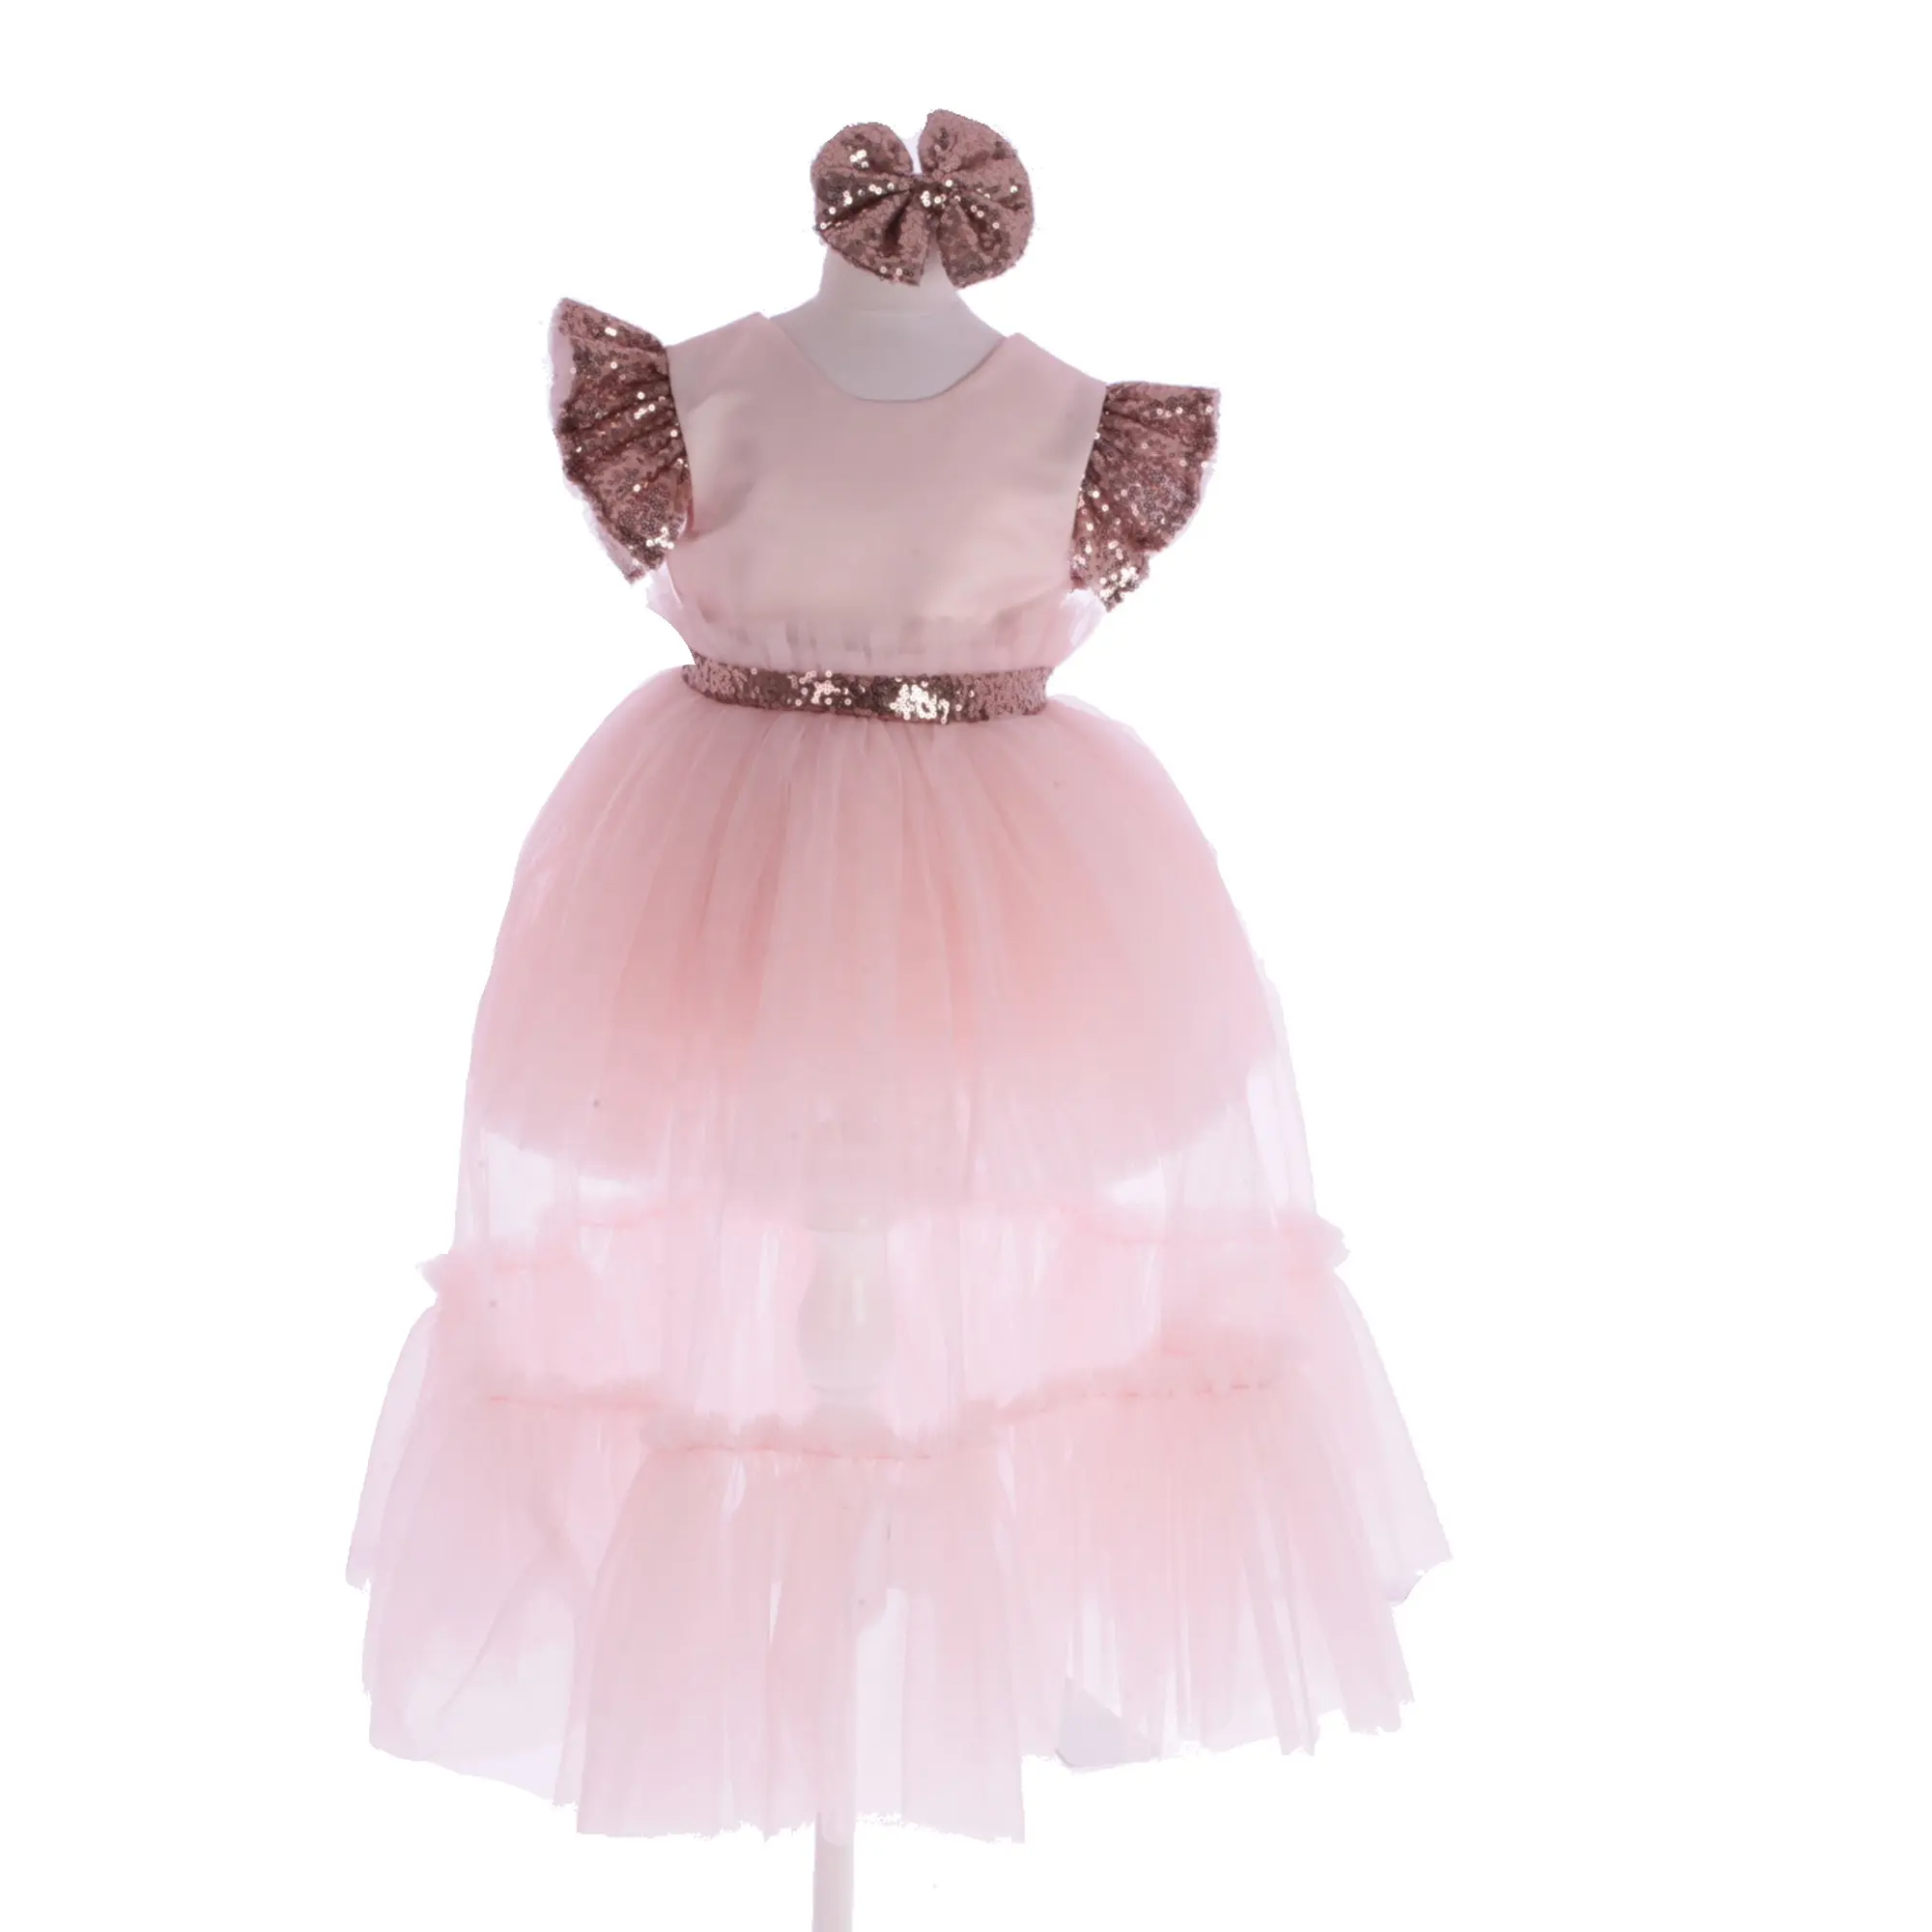 Toptan özel yüksek kalite Modern lüks çocuk giysileri bebek elbise 2022 yeni bebek 1 yaşındaki resmi elbise küçük kız prenses